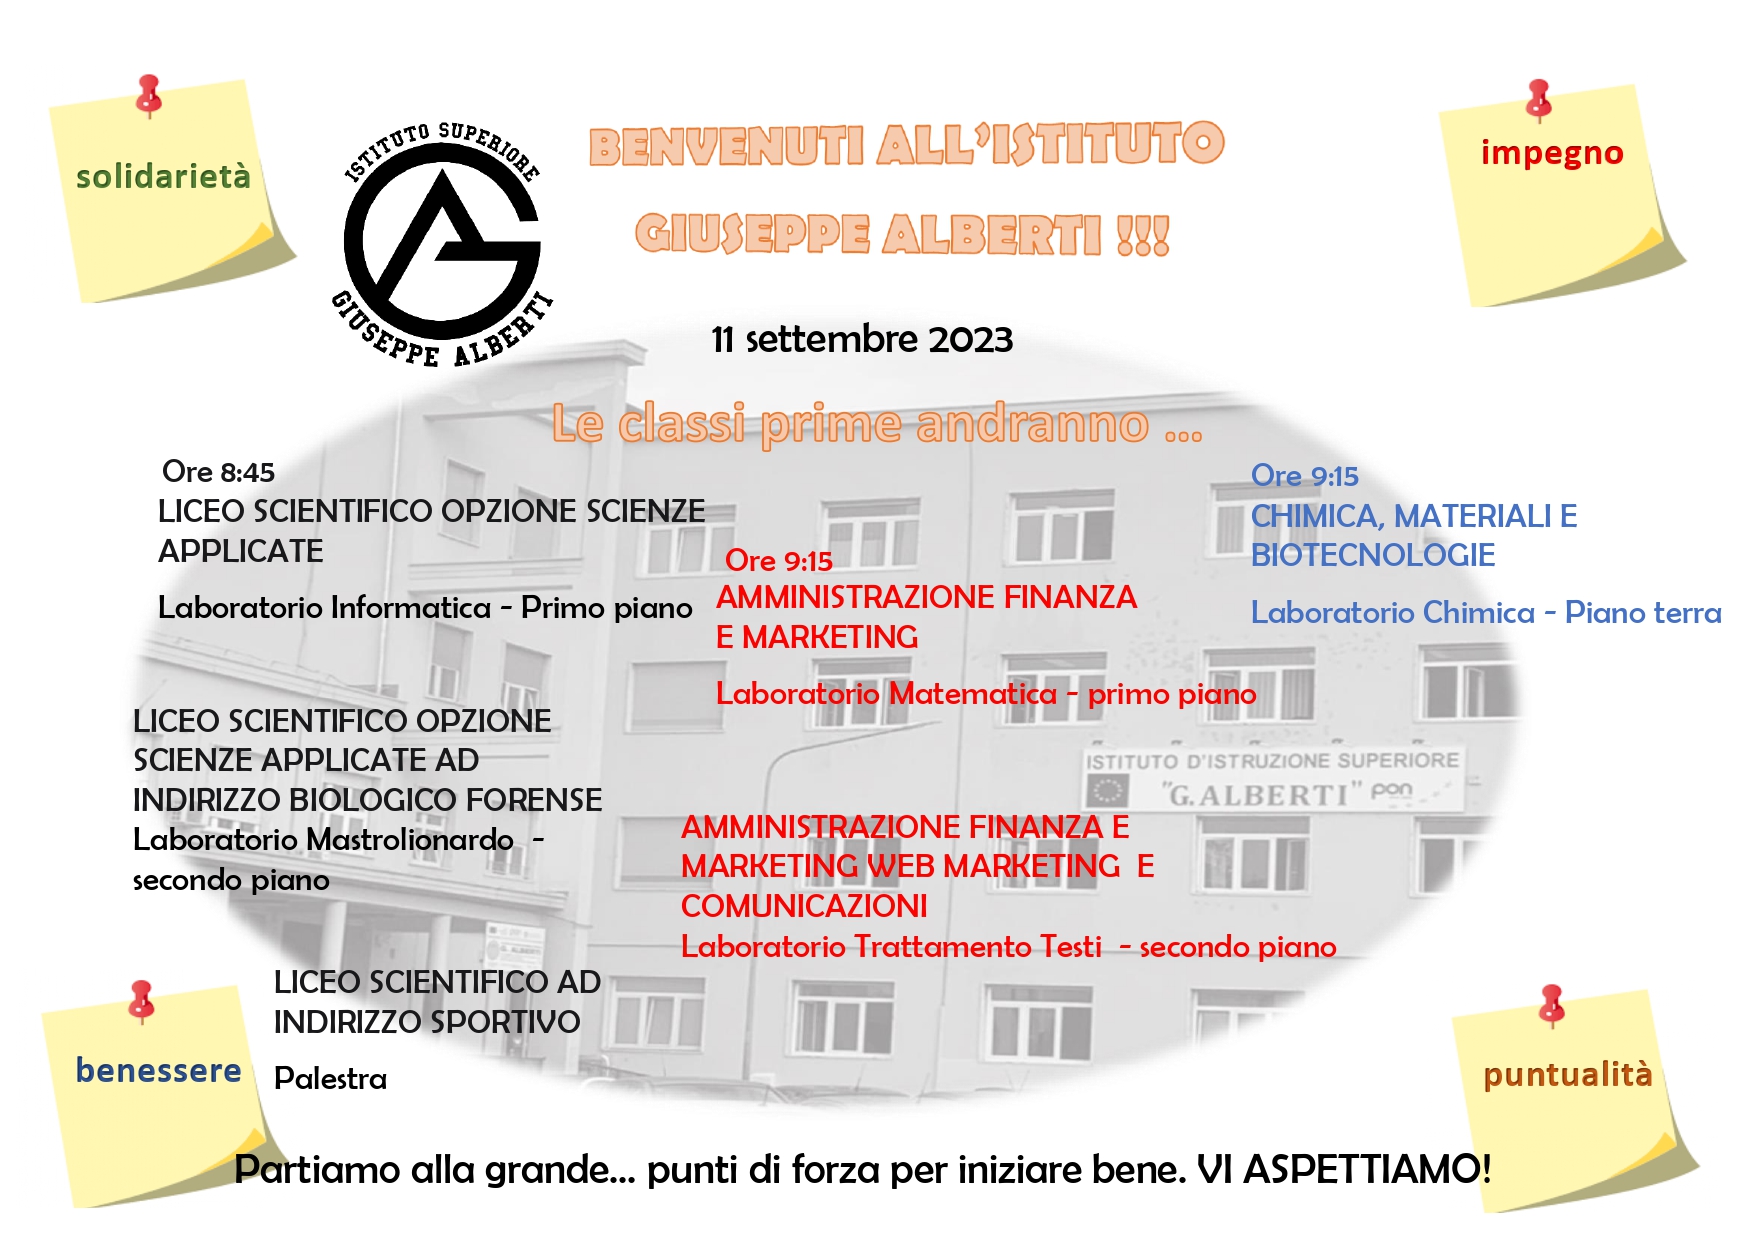 Scuola: lunedì 11 settembre riapre l’Istituto di Istruzione Secondaria di secondo grado “G. Alberti” di Benevento